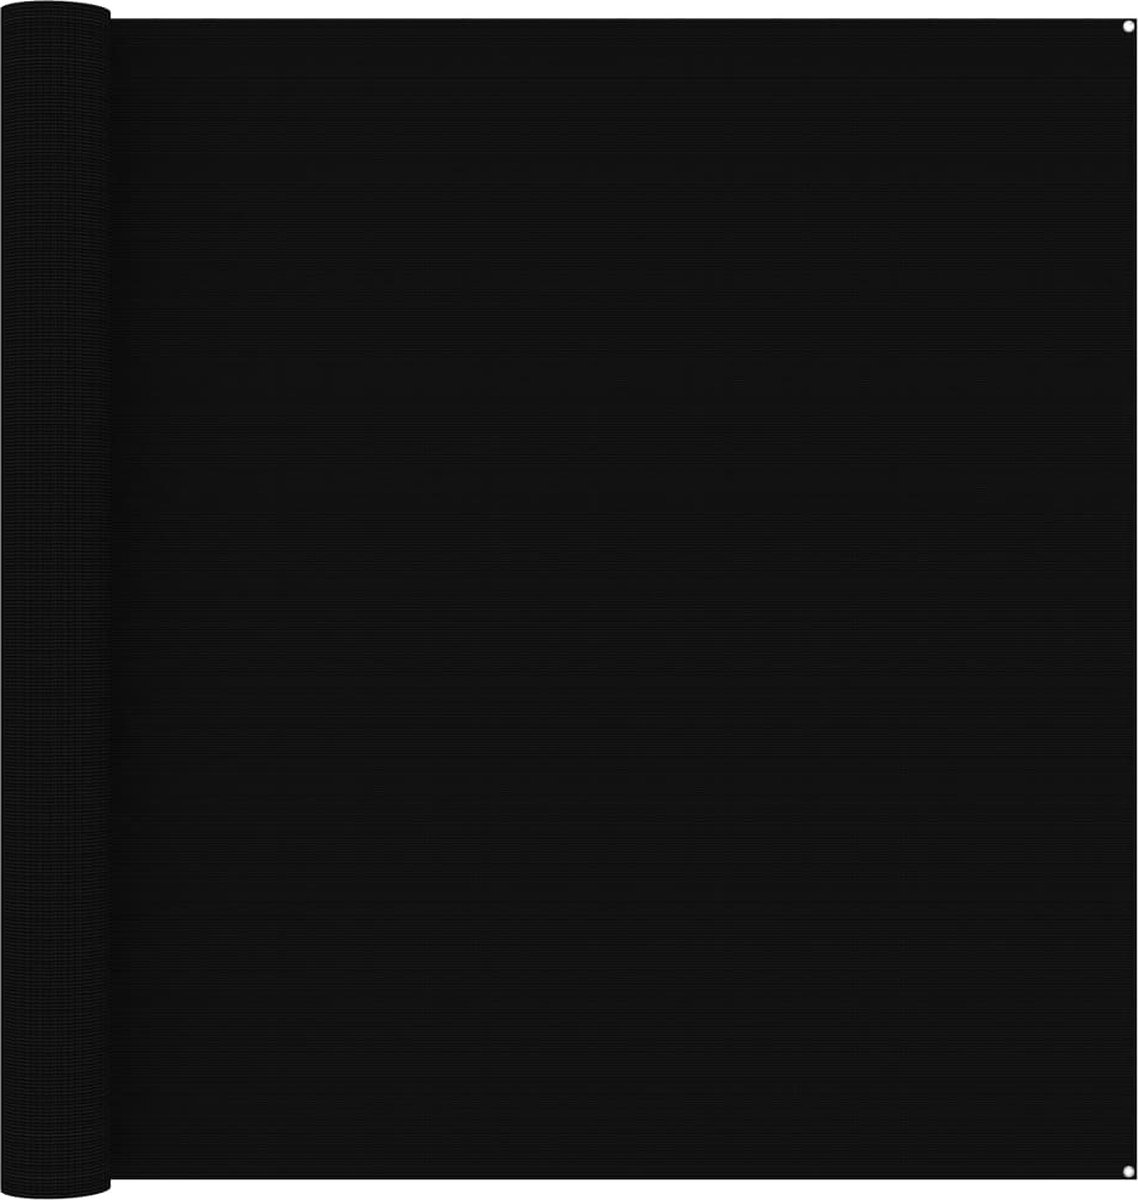 Decoways - Tenttapijt 300x500 cm zwart